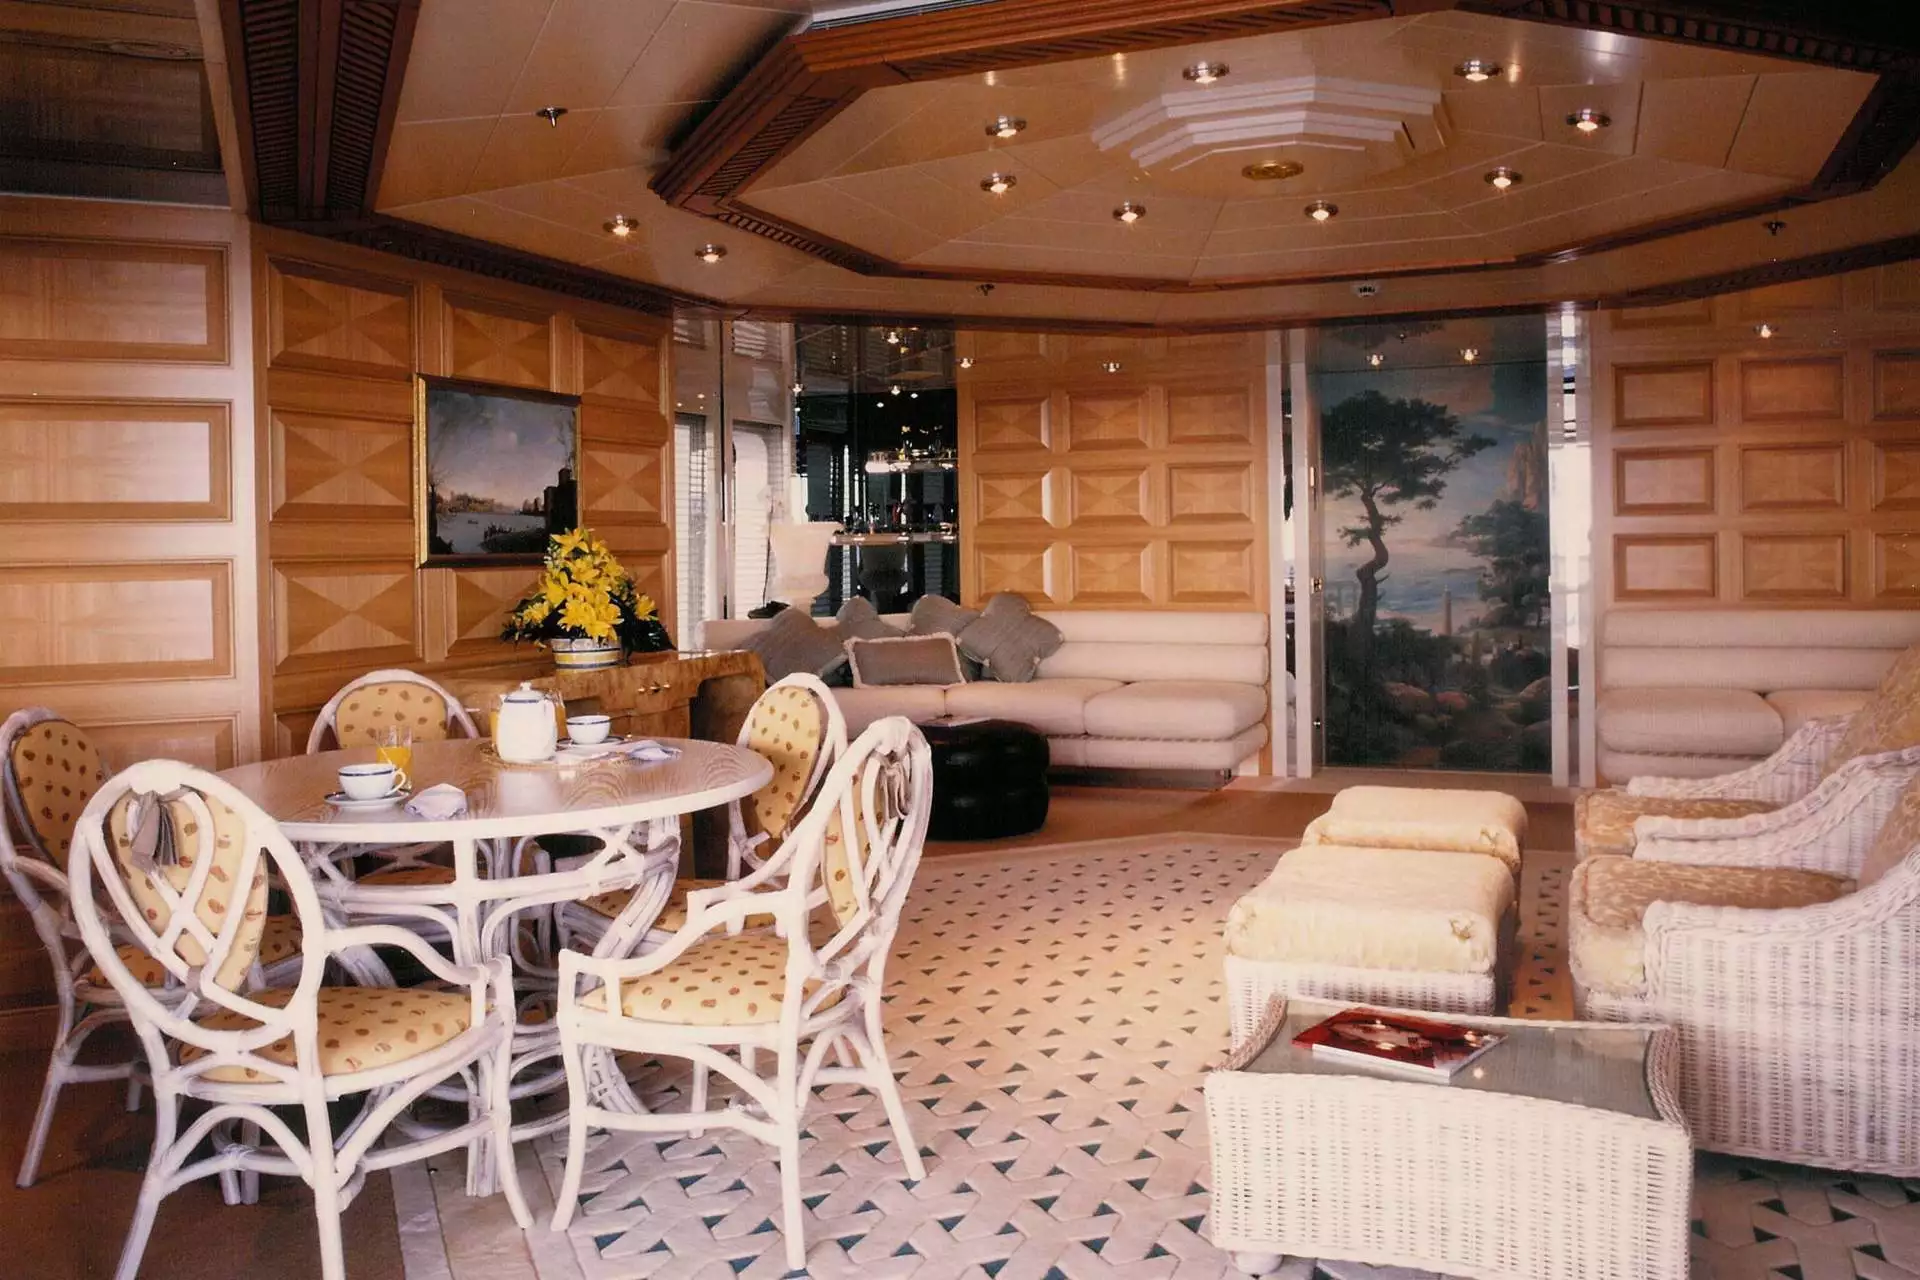 Design degli interni dell'yacht Donald Starkey